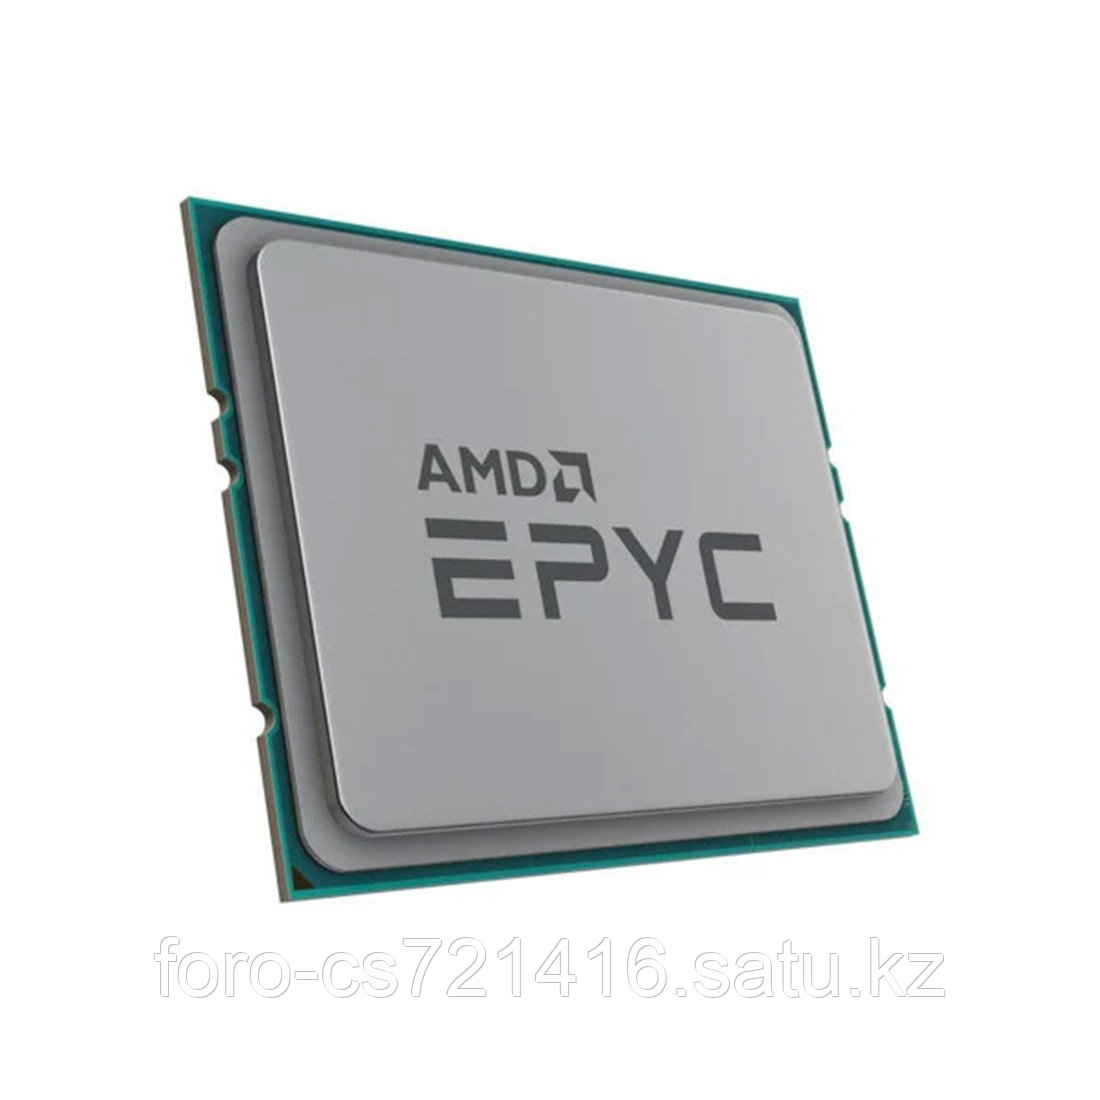 Микропроцессор серверного класса AMD Epyc 7282